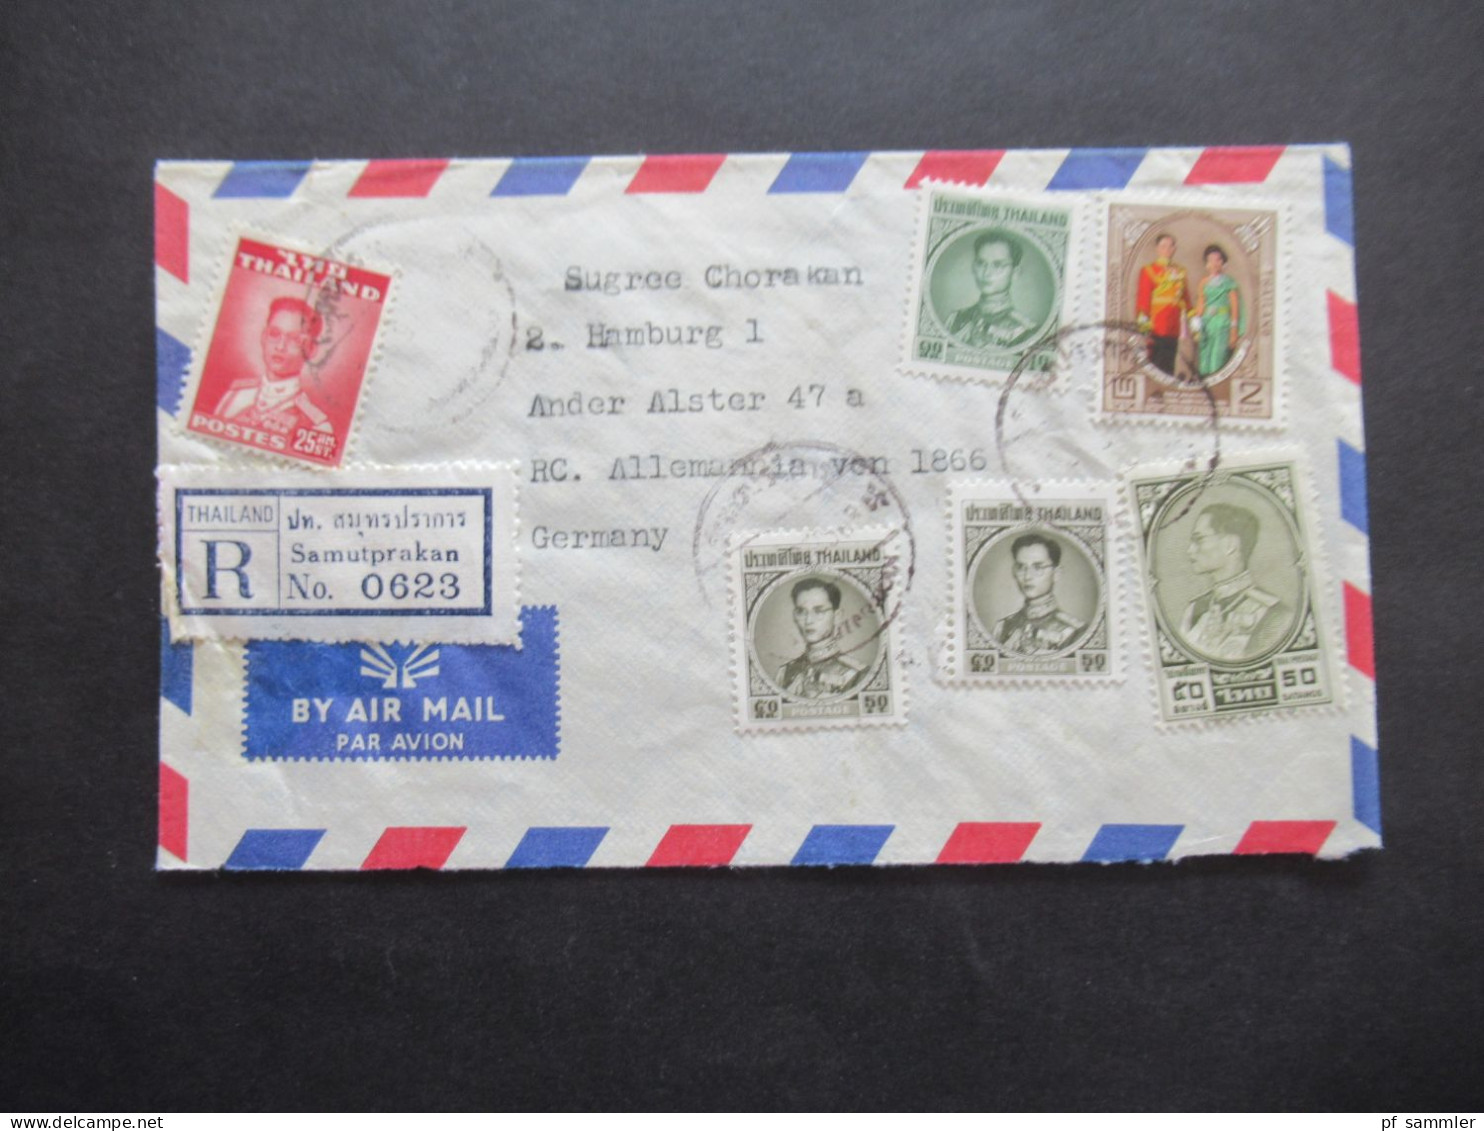 Asien Thailand 1965 Einschreiben / Registered Letter Luftpost / Air Mail Samutprakan - Hamburg - Thailand